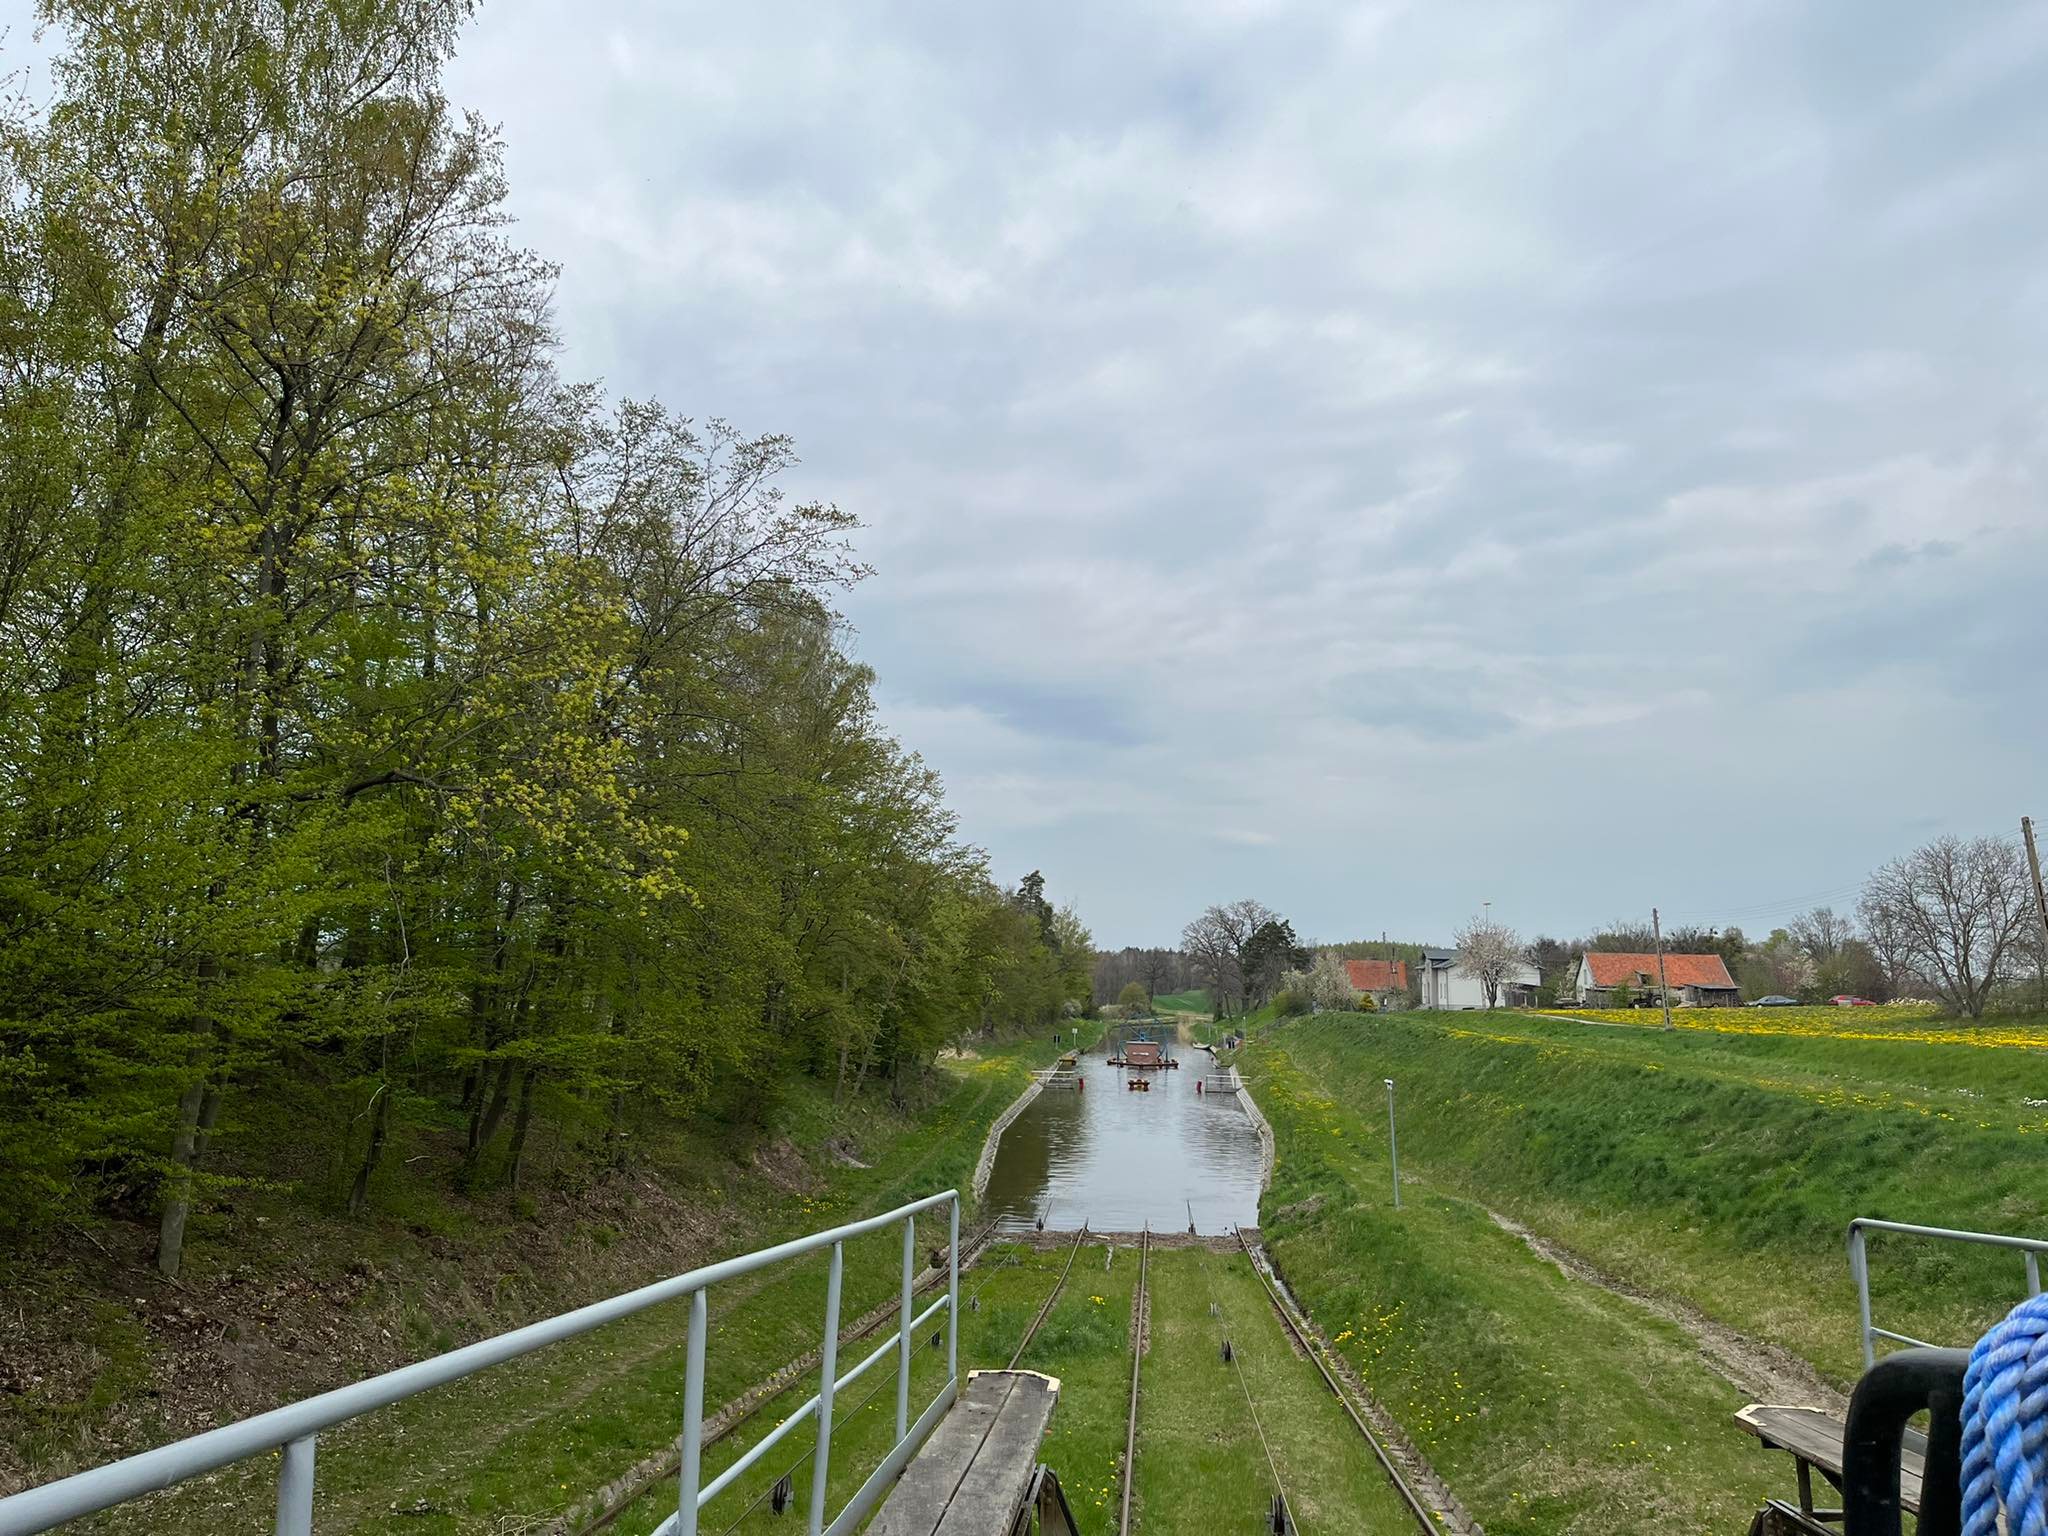 Zakończono prace remontowe na Kanale Elbląskim turystyka Lidzbark Warmiński, Wiadomości, zPAP